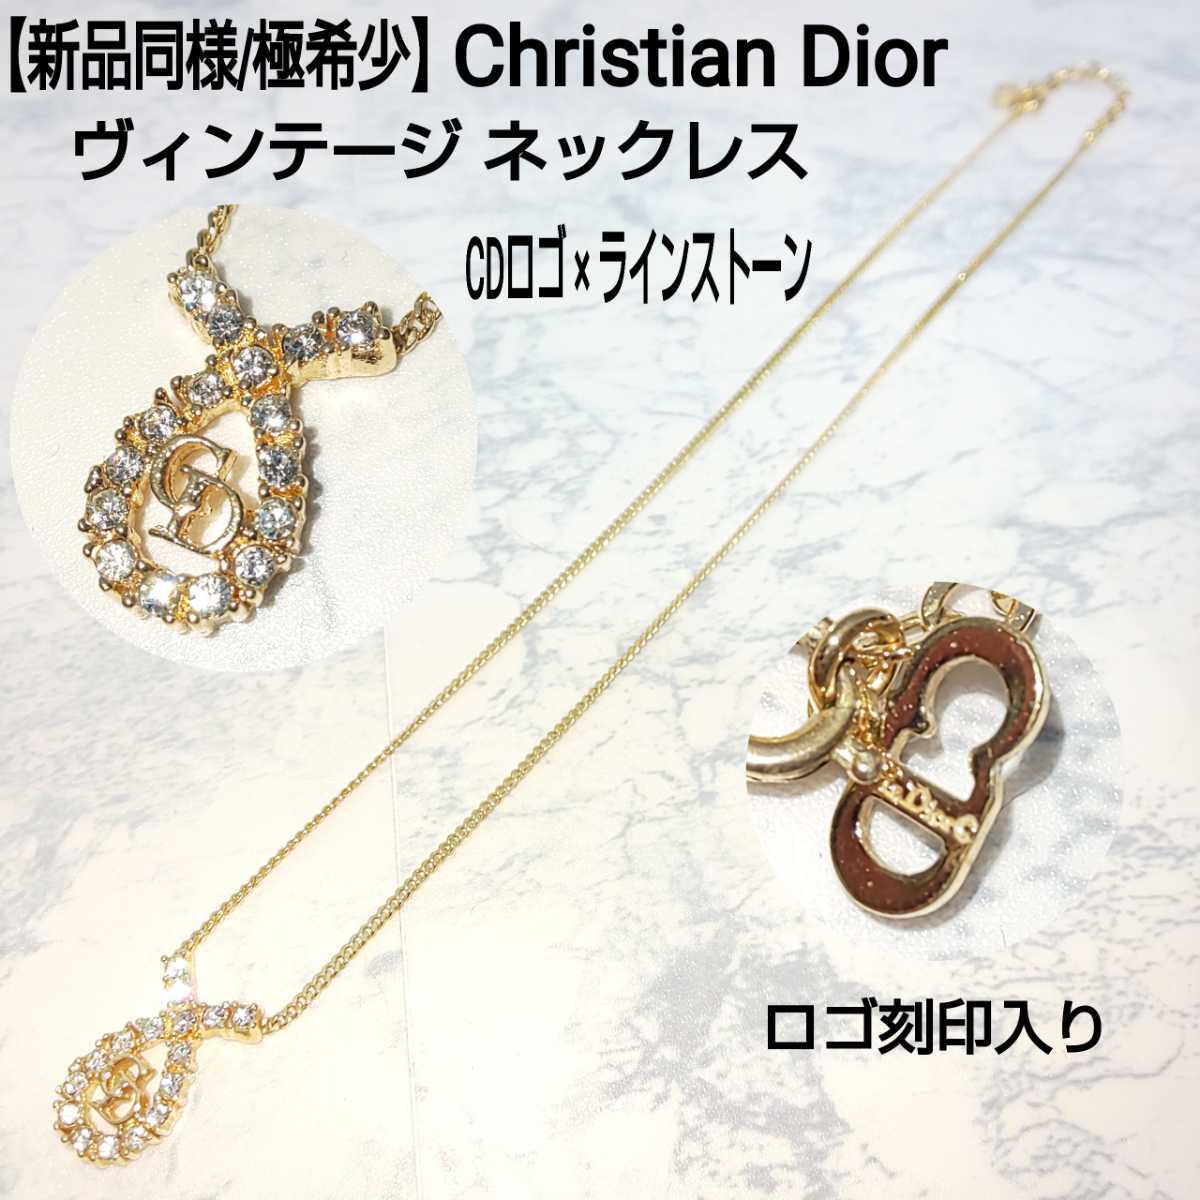 【新品同様/極希少】Christian Dior クリスチャンディオール ヴィンテージ ネックレス CDロゴ×ラインストーン メレストーン 石付  ゴールド